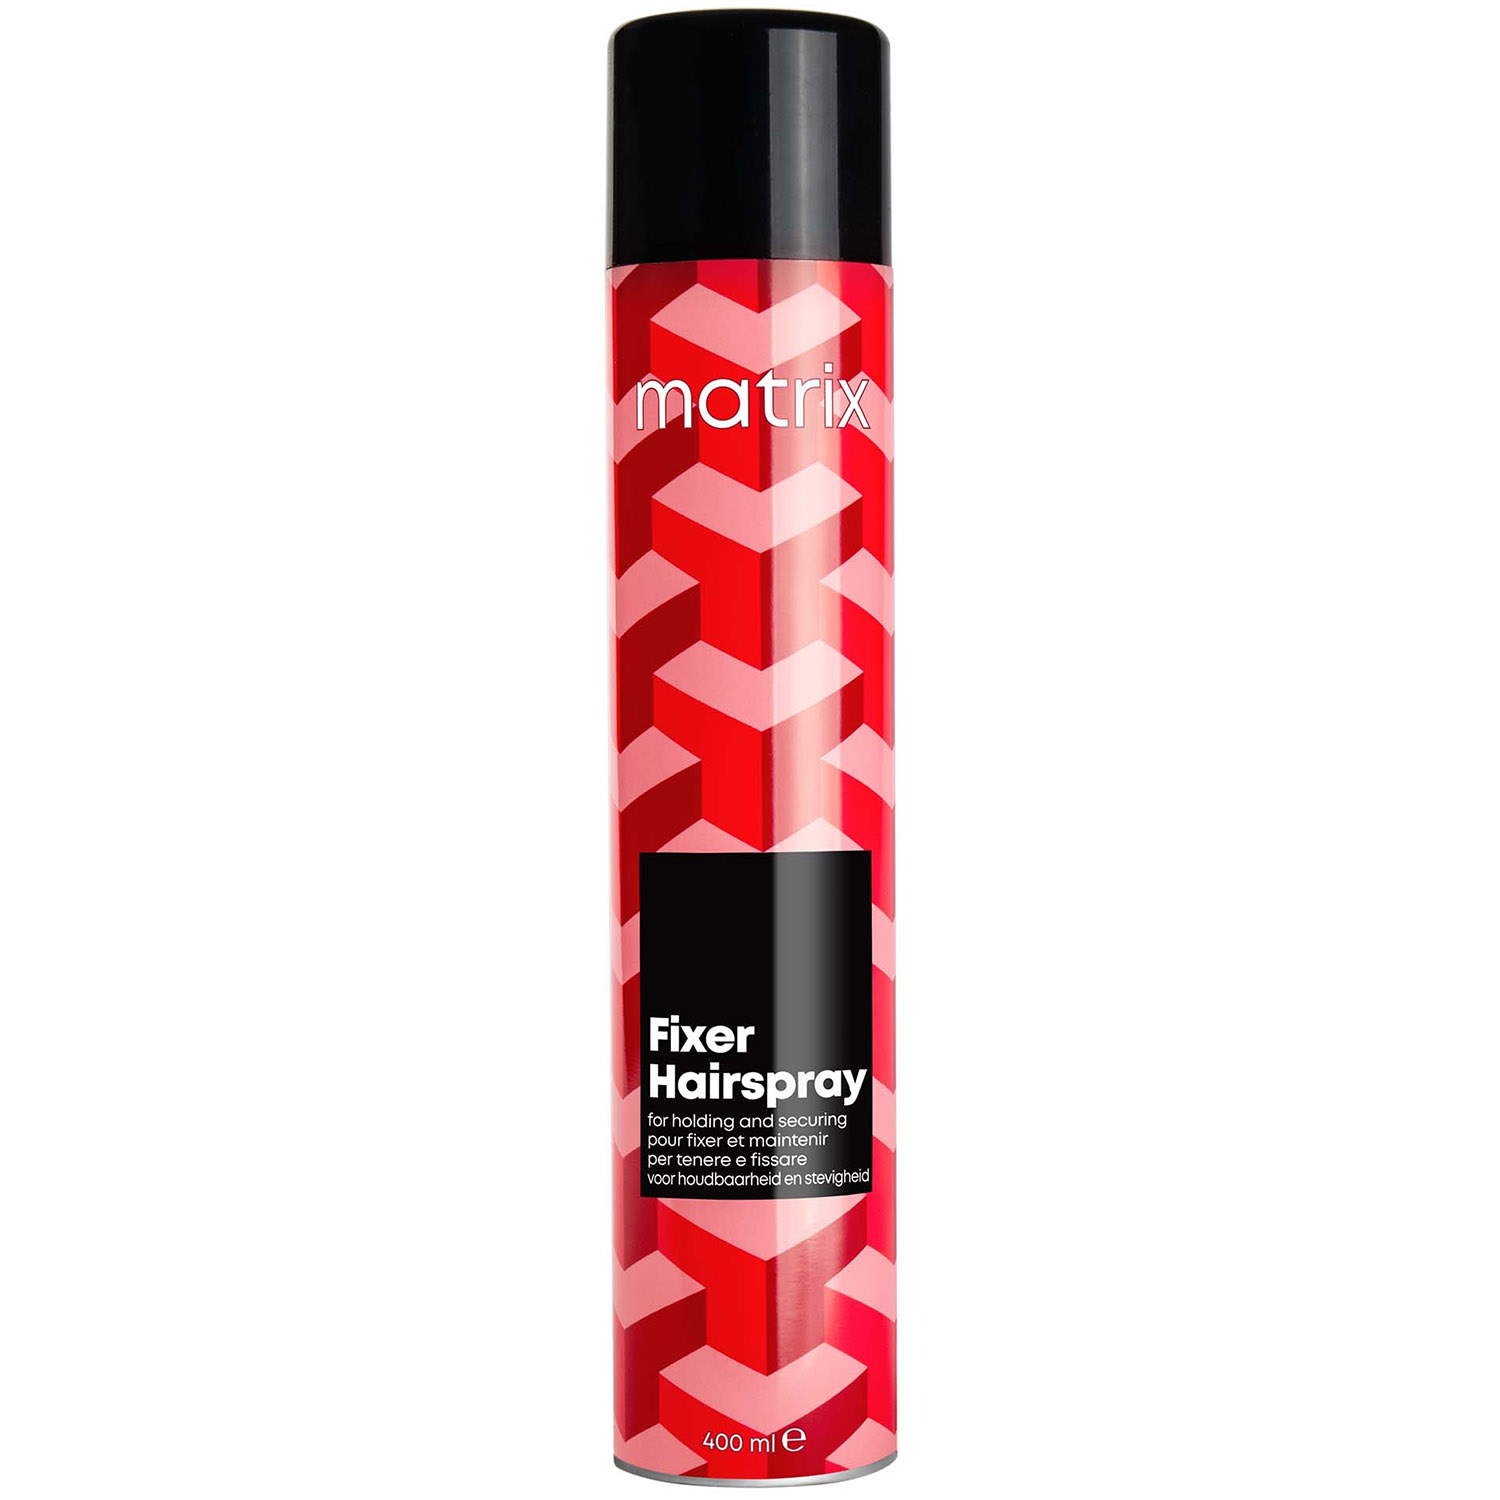 Matrix Профессиональный лак-спрей Fixer для подвижной укладки, 400 мл (Matrix, Стайлинг) matrix fixer hairspray